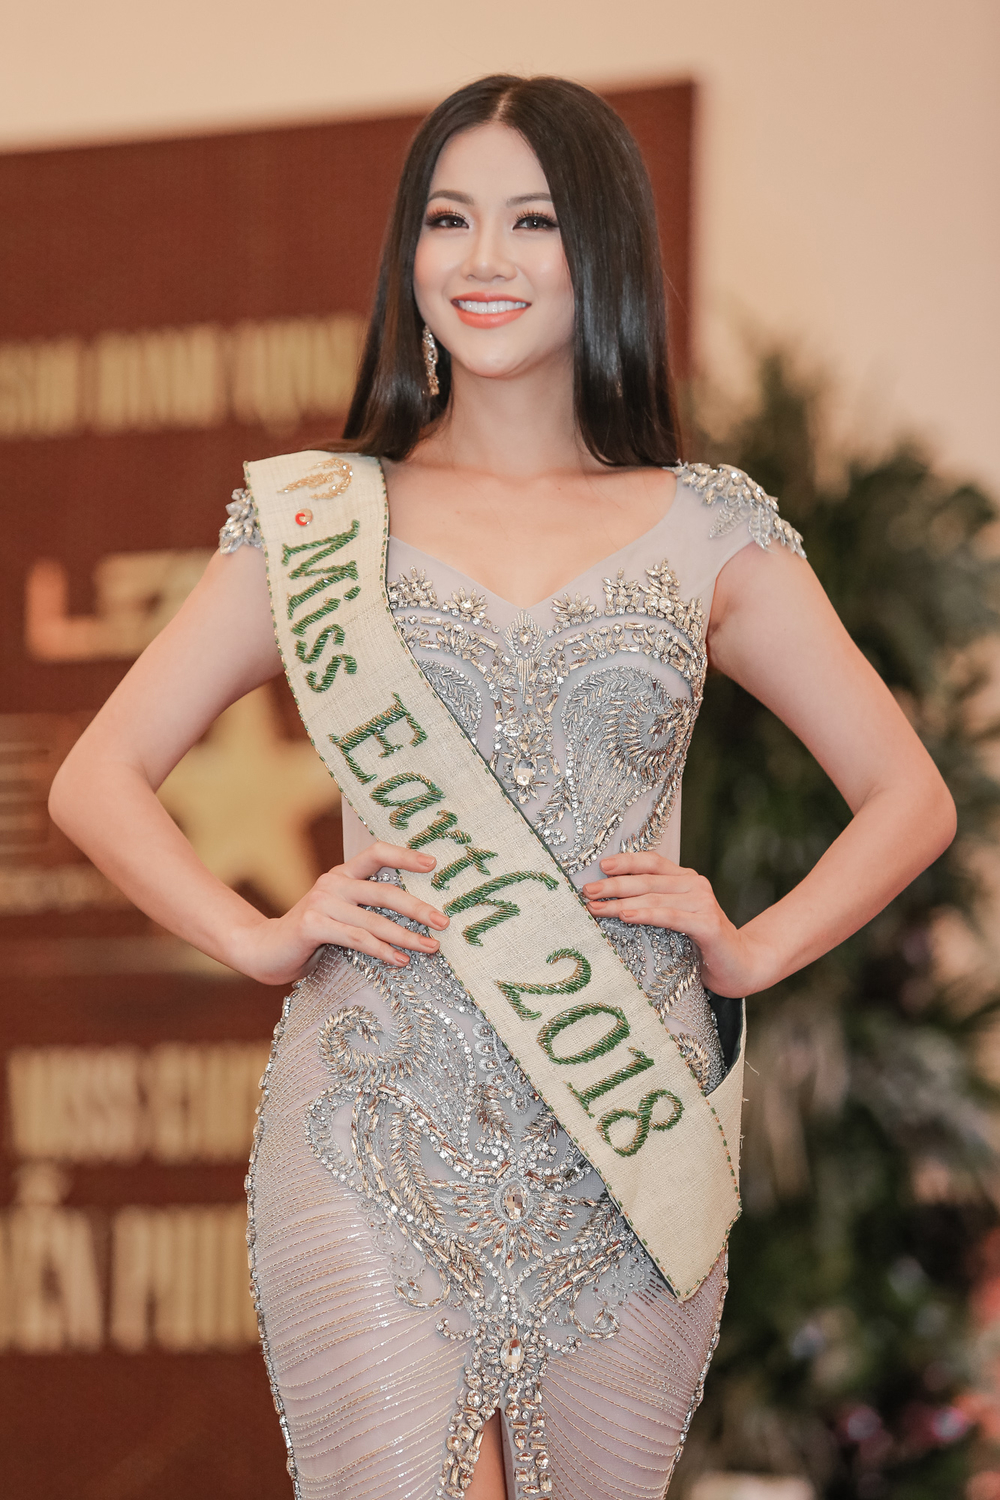 Không còn giấu giếm, Hoa hậu Trái đất 2018 Phương Khánh xác nhận có chỉnh một số nét trên mặt - Tin sao Viet - Tin tuc sao Viet - Scandal sao Viet - Tin tuc cua Sao - Tin cua Sao